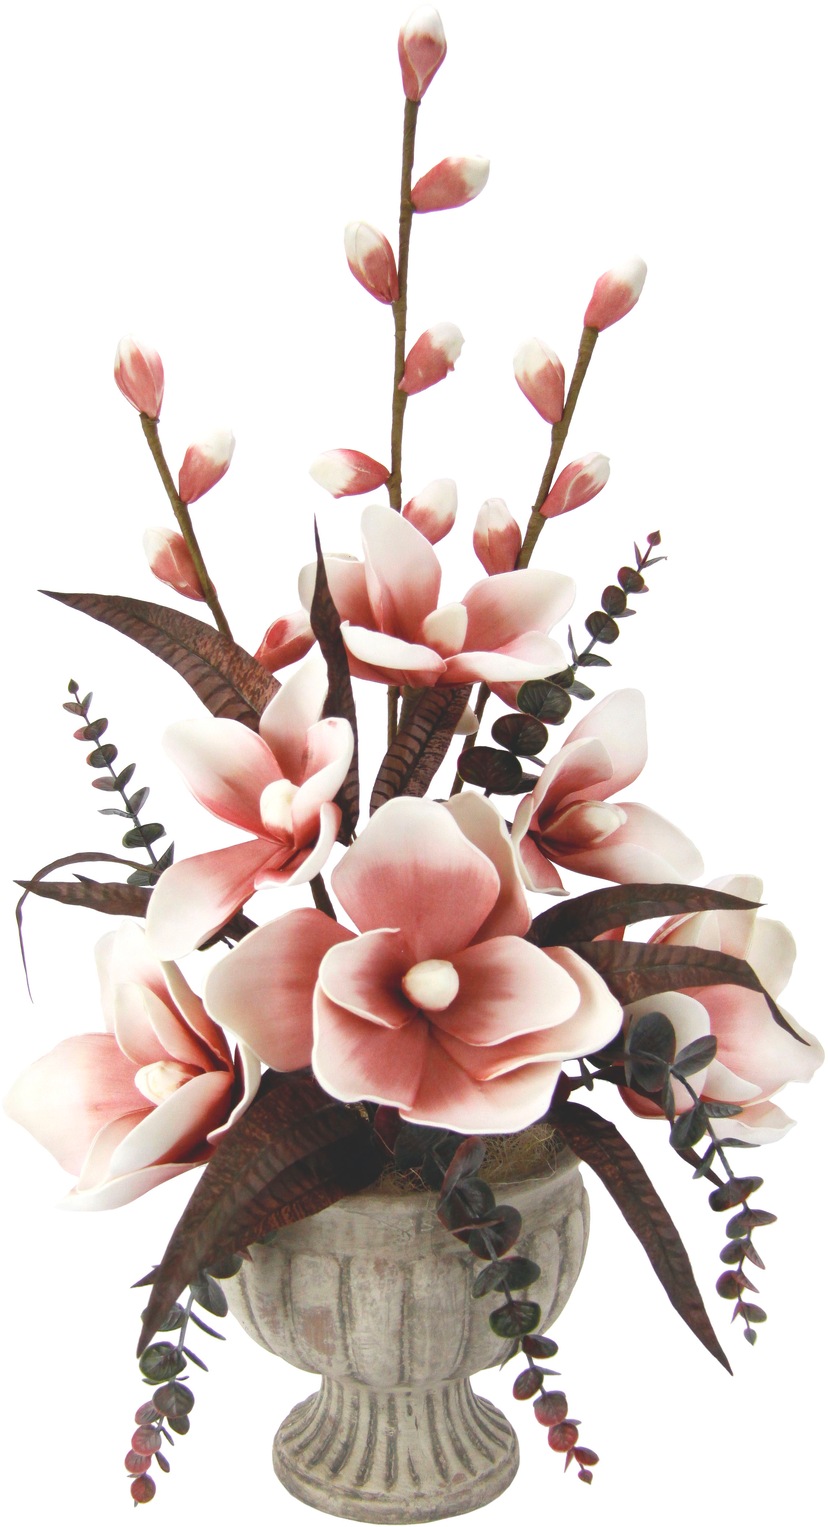 kaufen »Arrangement Kunstpflanze Vase« in Soft-Magnolie I.GE.A.